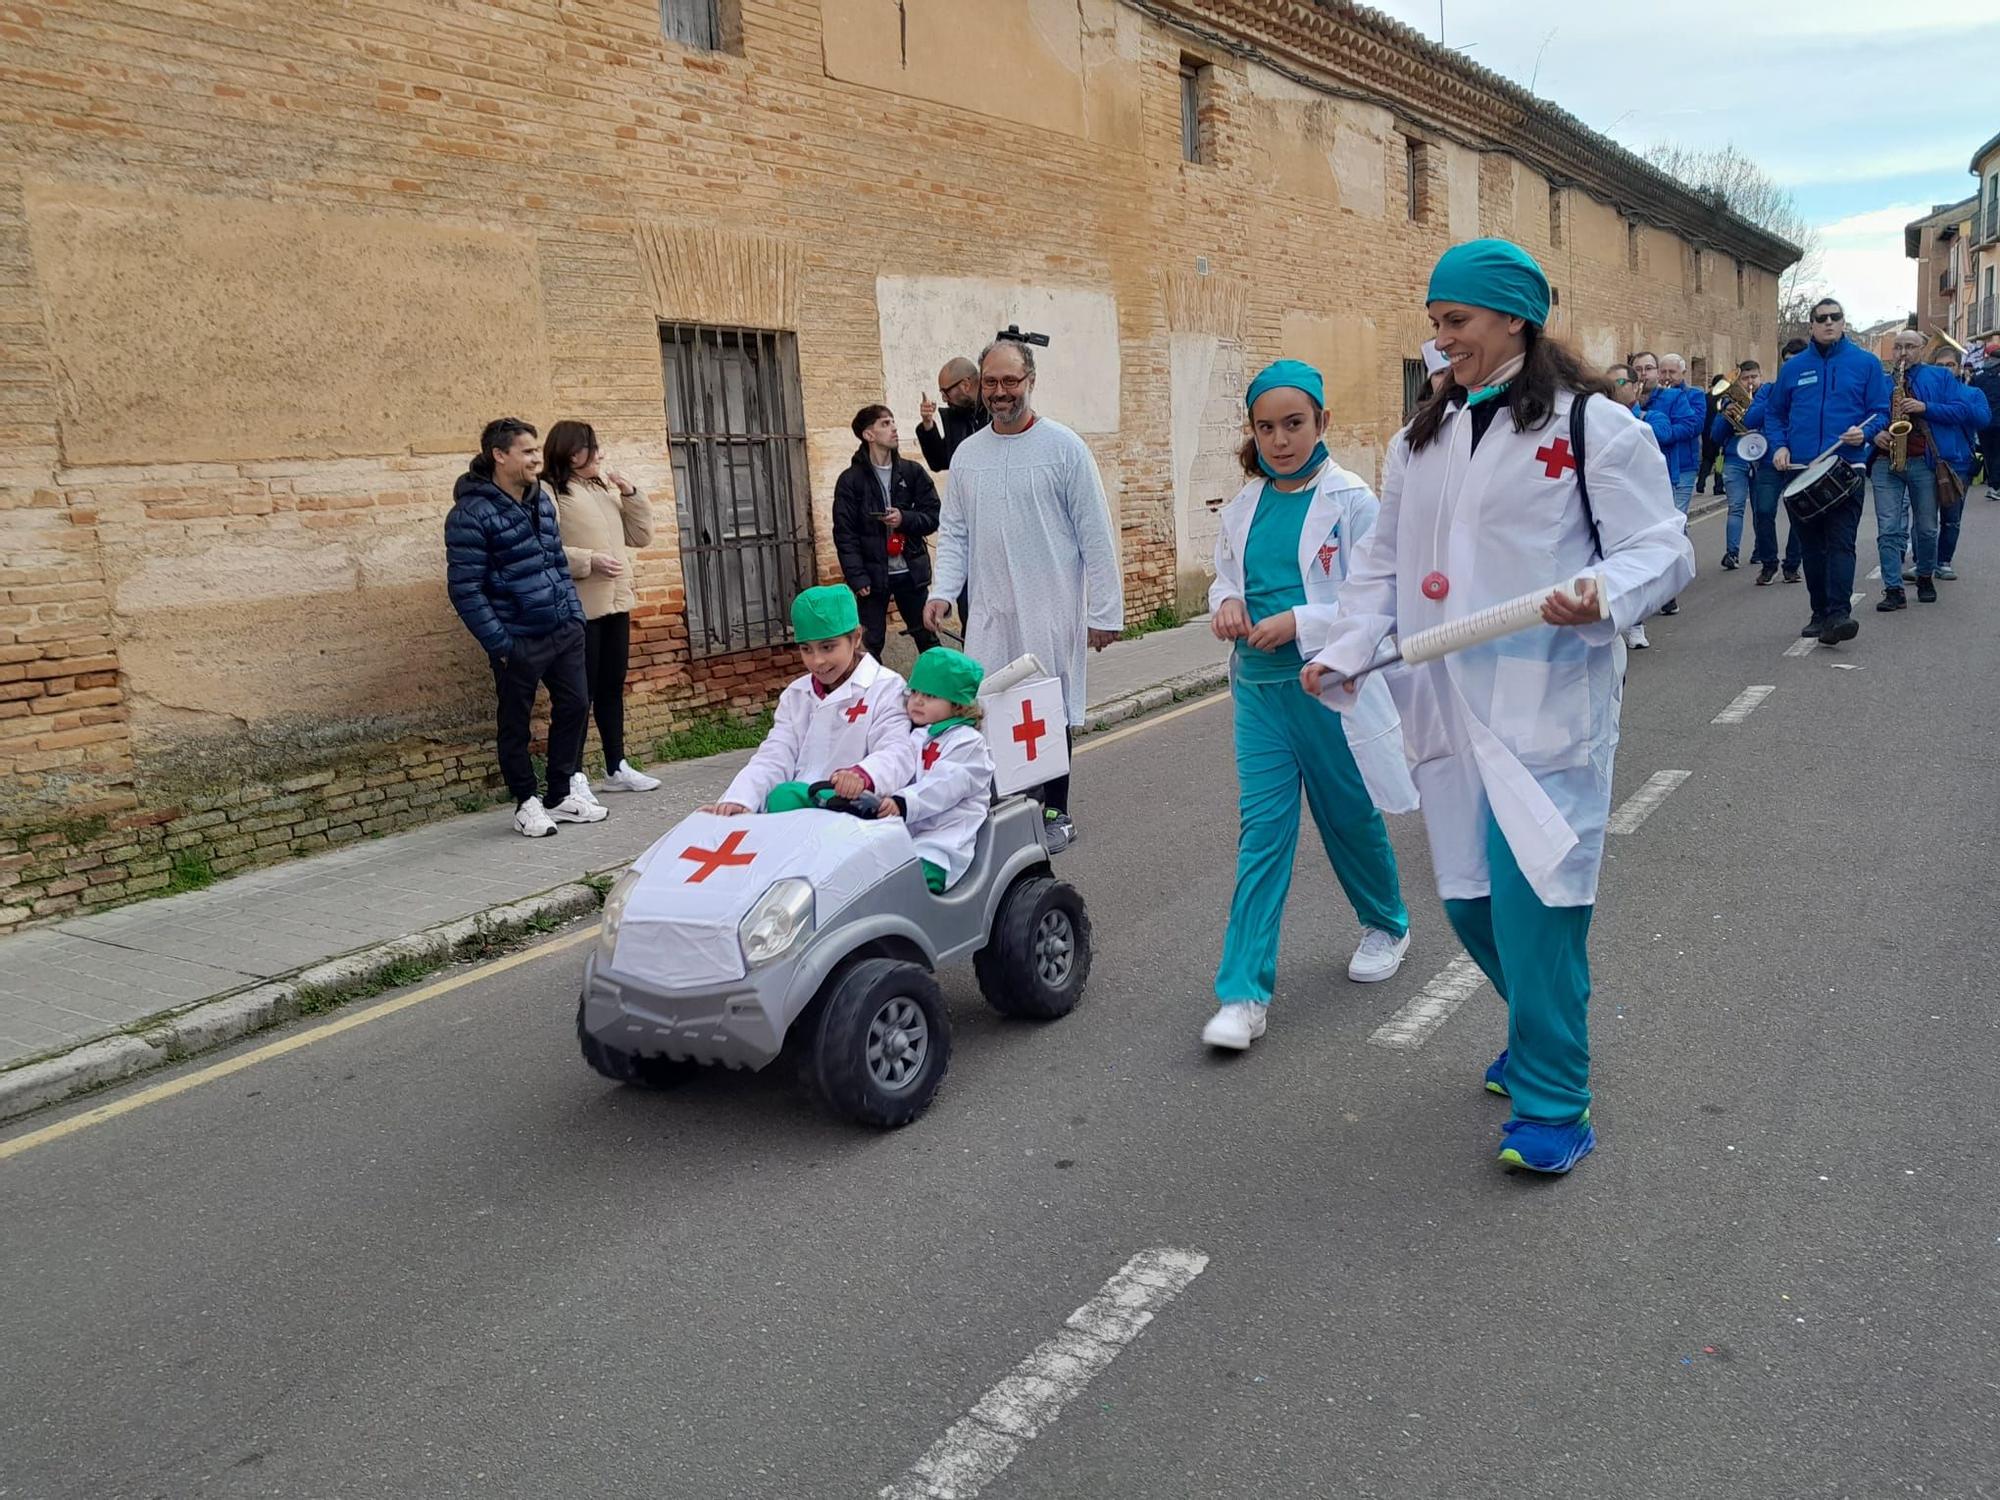 GALERÍA | Derroche de ingenio en el desfile infantil de Toro